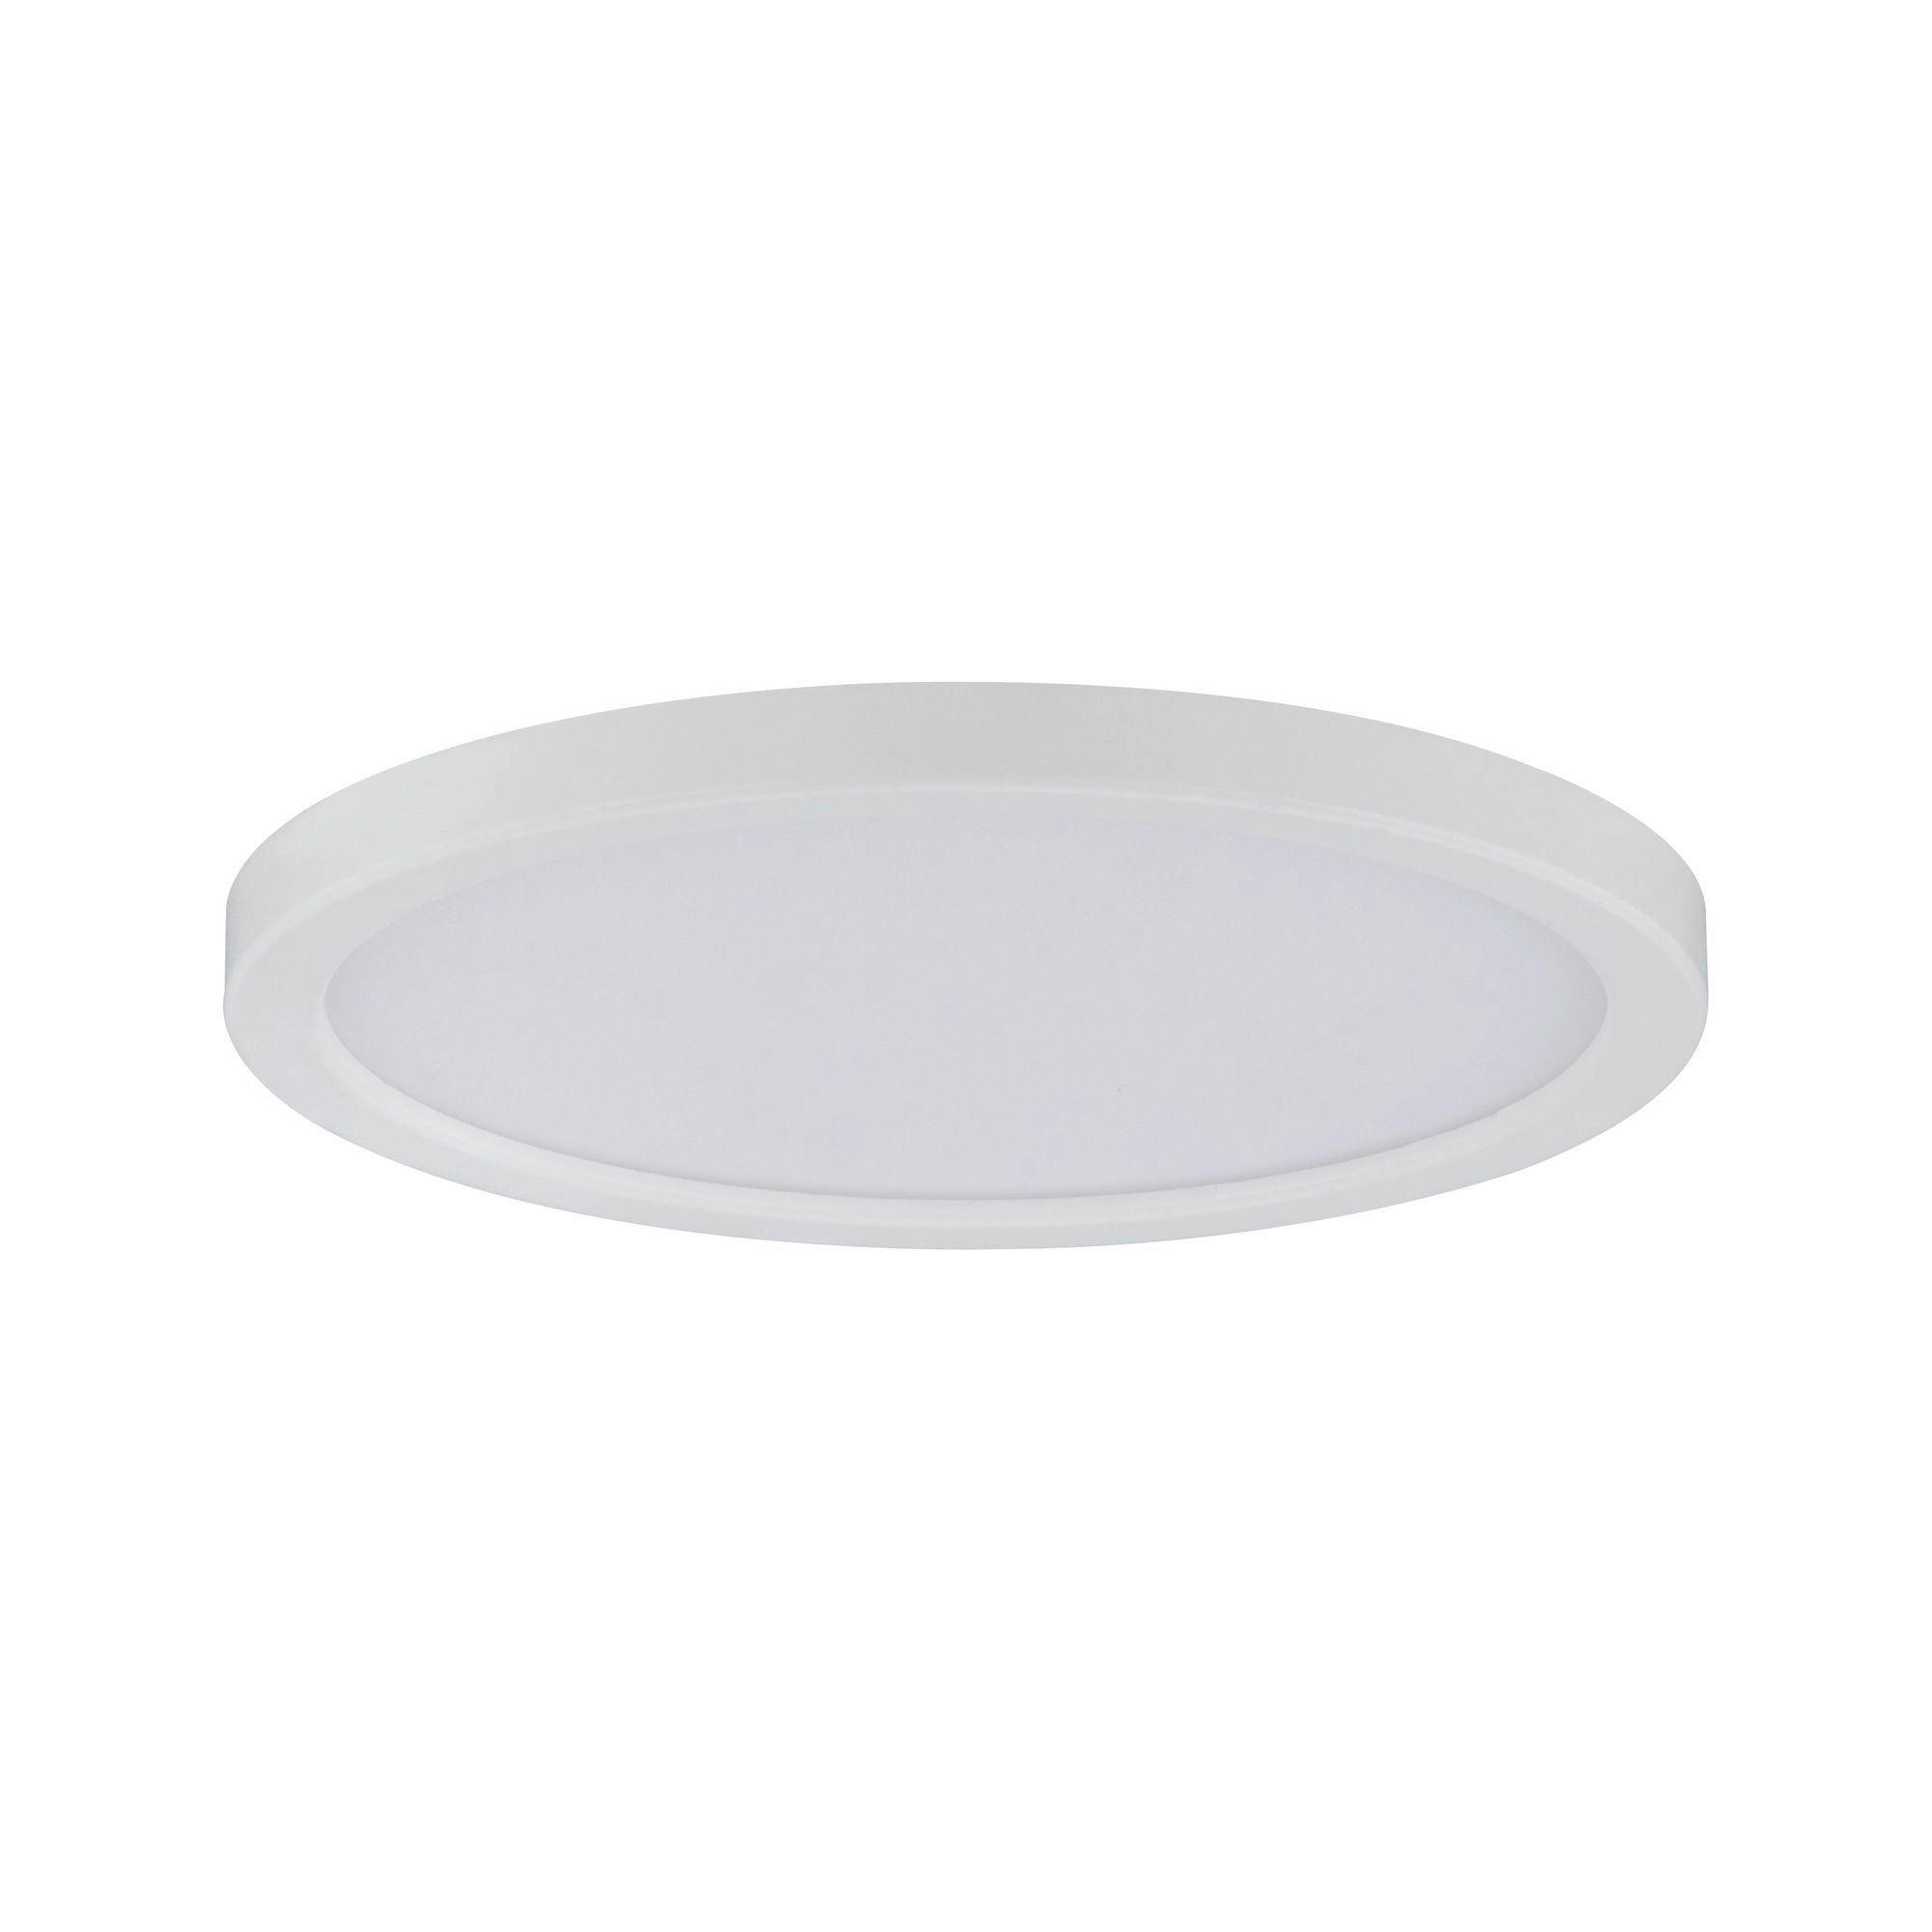 LED-PANEEL  - Weiß, Basics, Kunststoff (12cm) - Paulmann